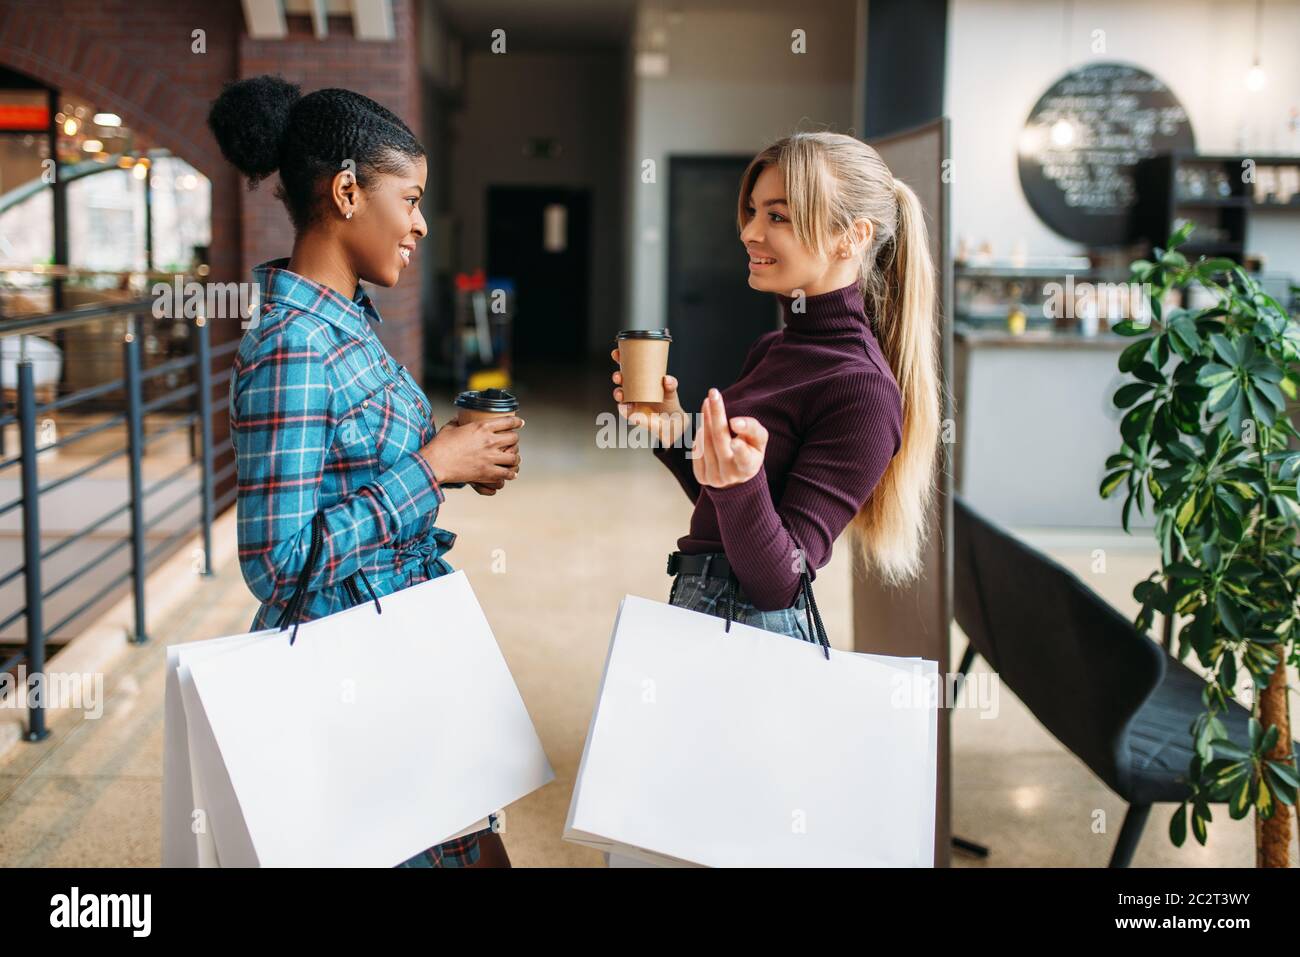 Blanco y negro clientes femeninos con bolsas de compras en el centro comercial. Shopaholics en tienda de ropa, compras, moda Foto de stock